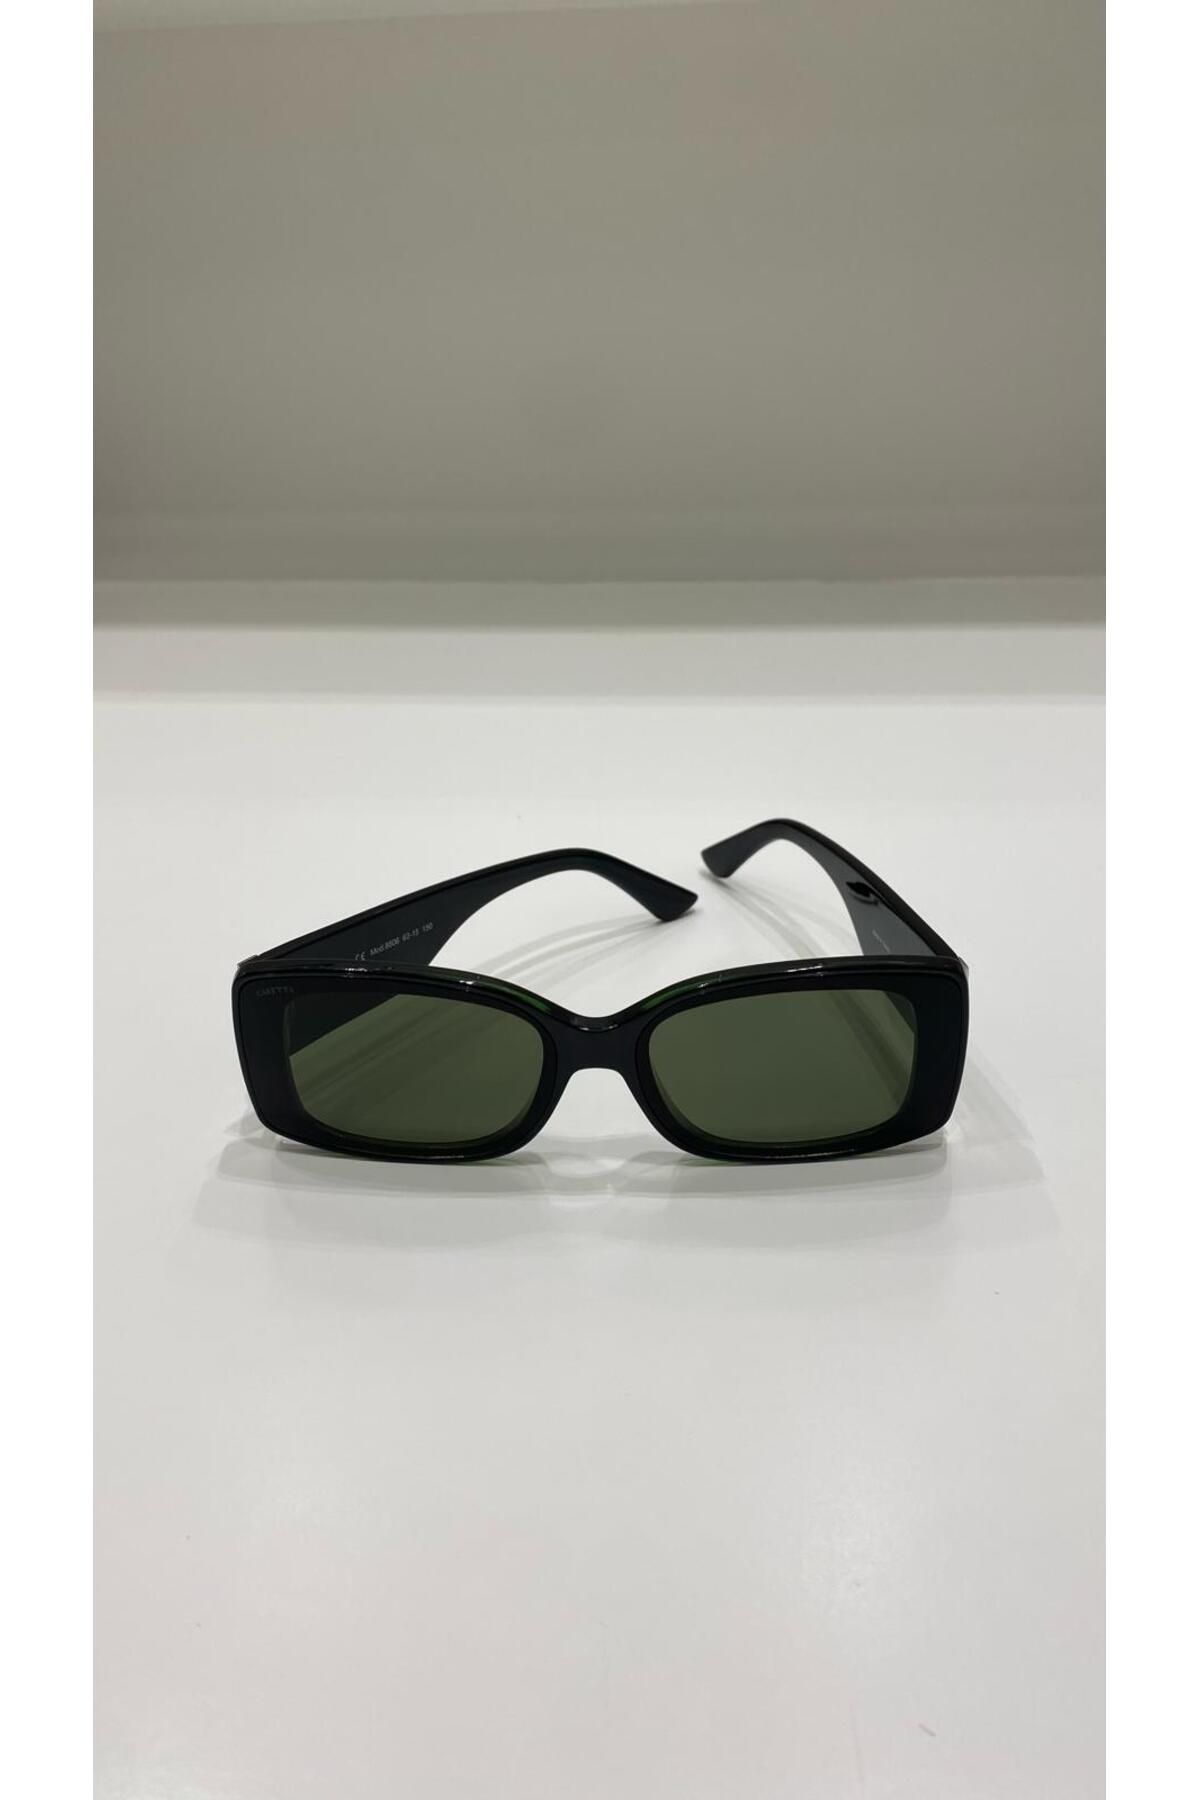 Caretta 8806 kadın güneş gözlüğü